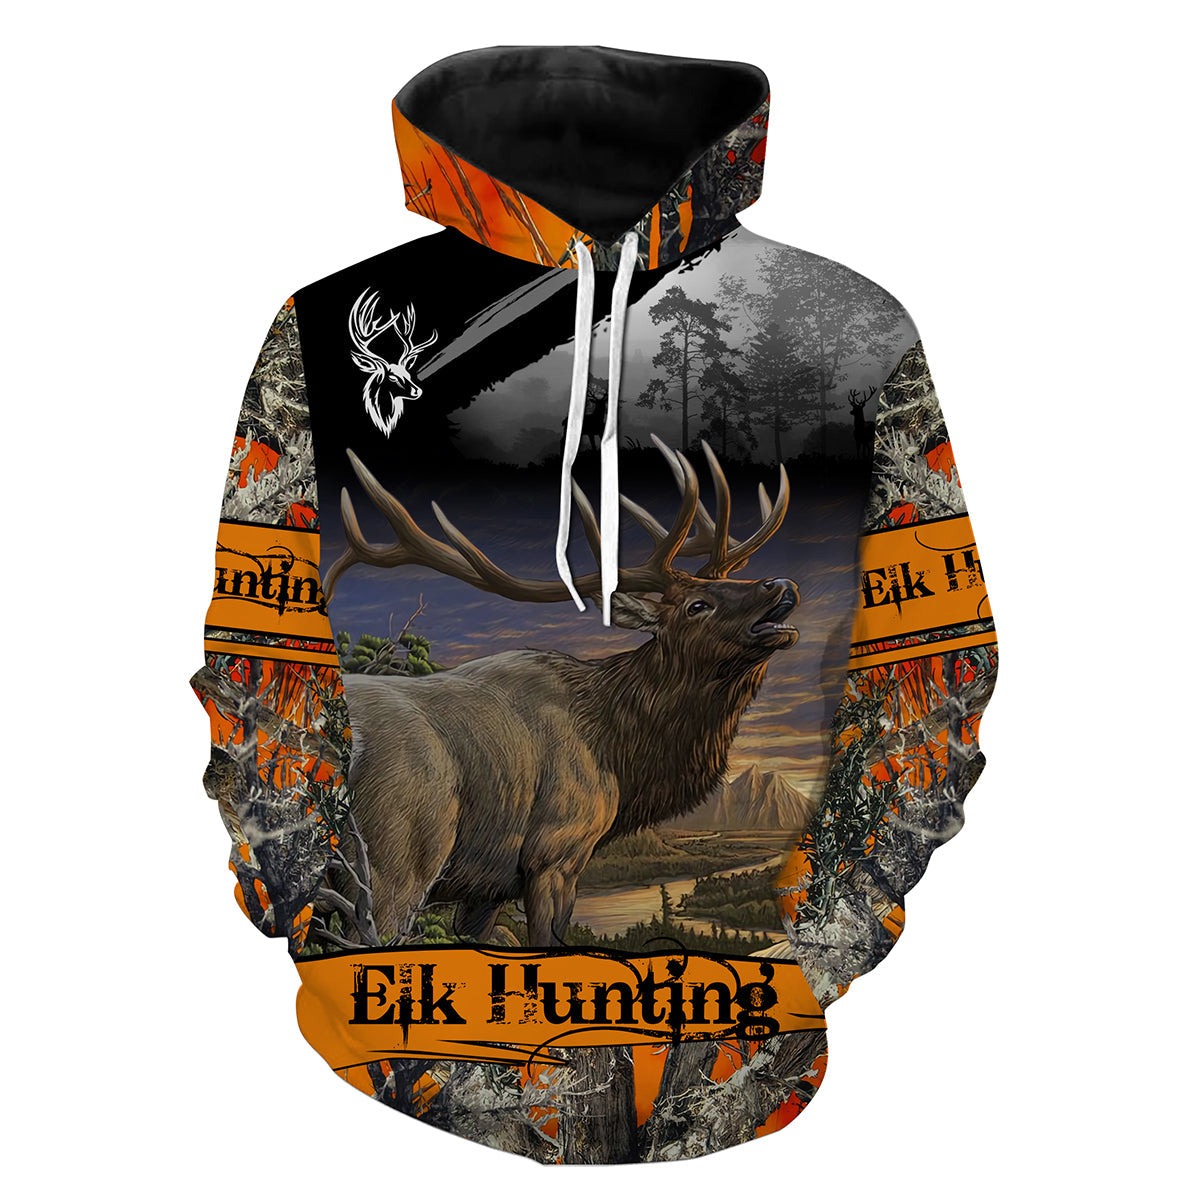 Elk Hunting Full 3D Print T- Shirt/ Long Sleeve/ Hoodie/ Zip up hoodie - hunting gift for Men/ Women and Kid